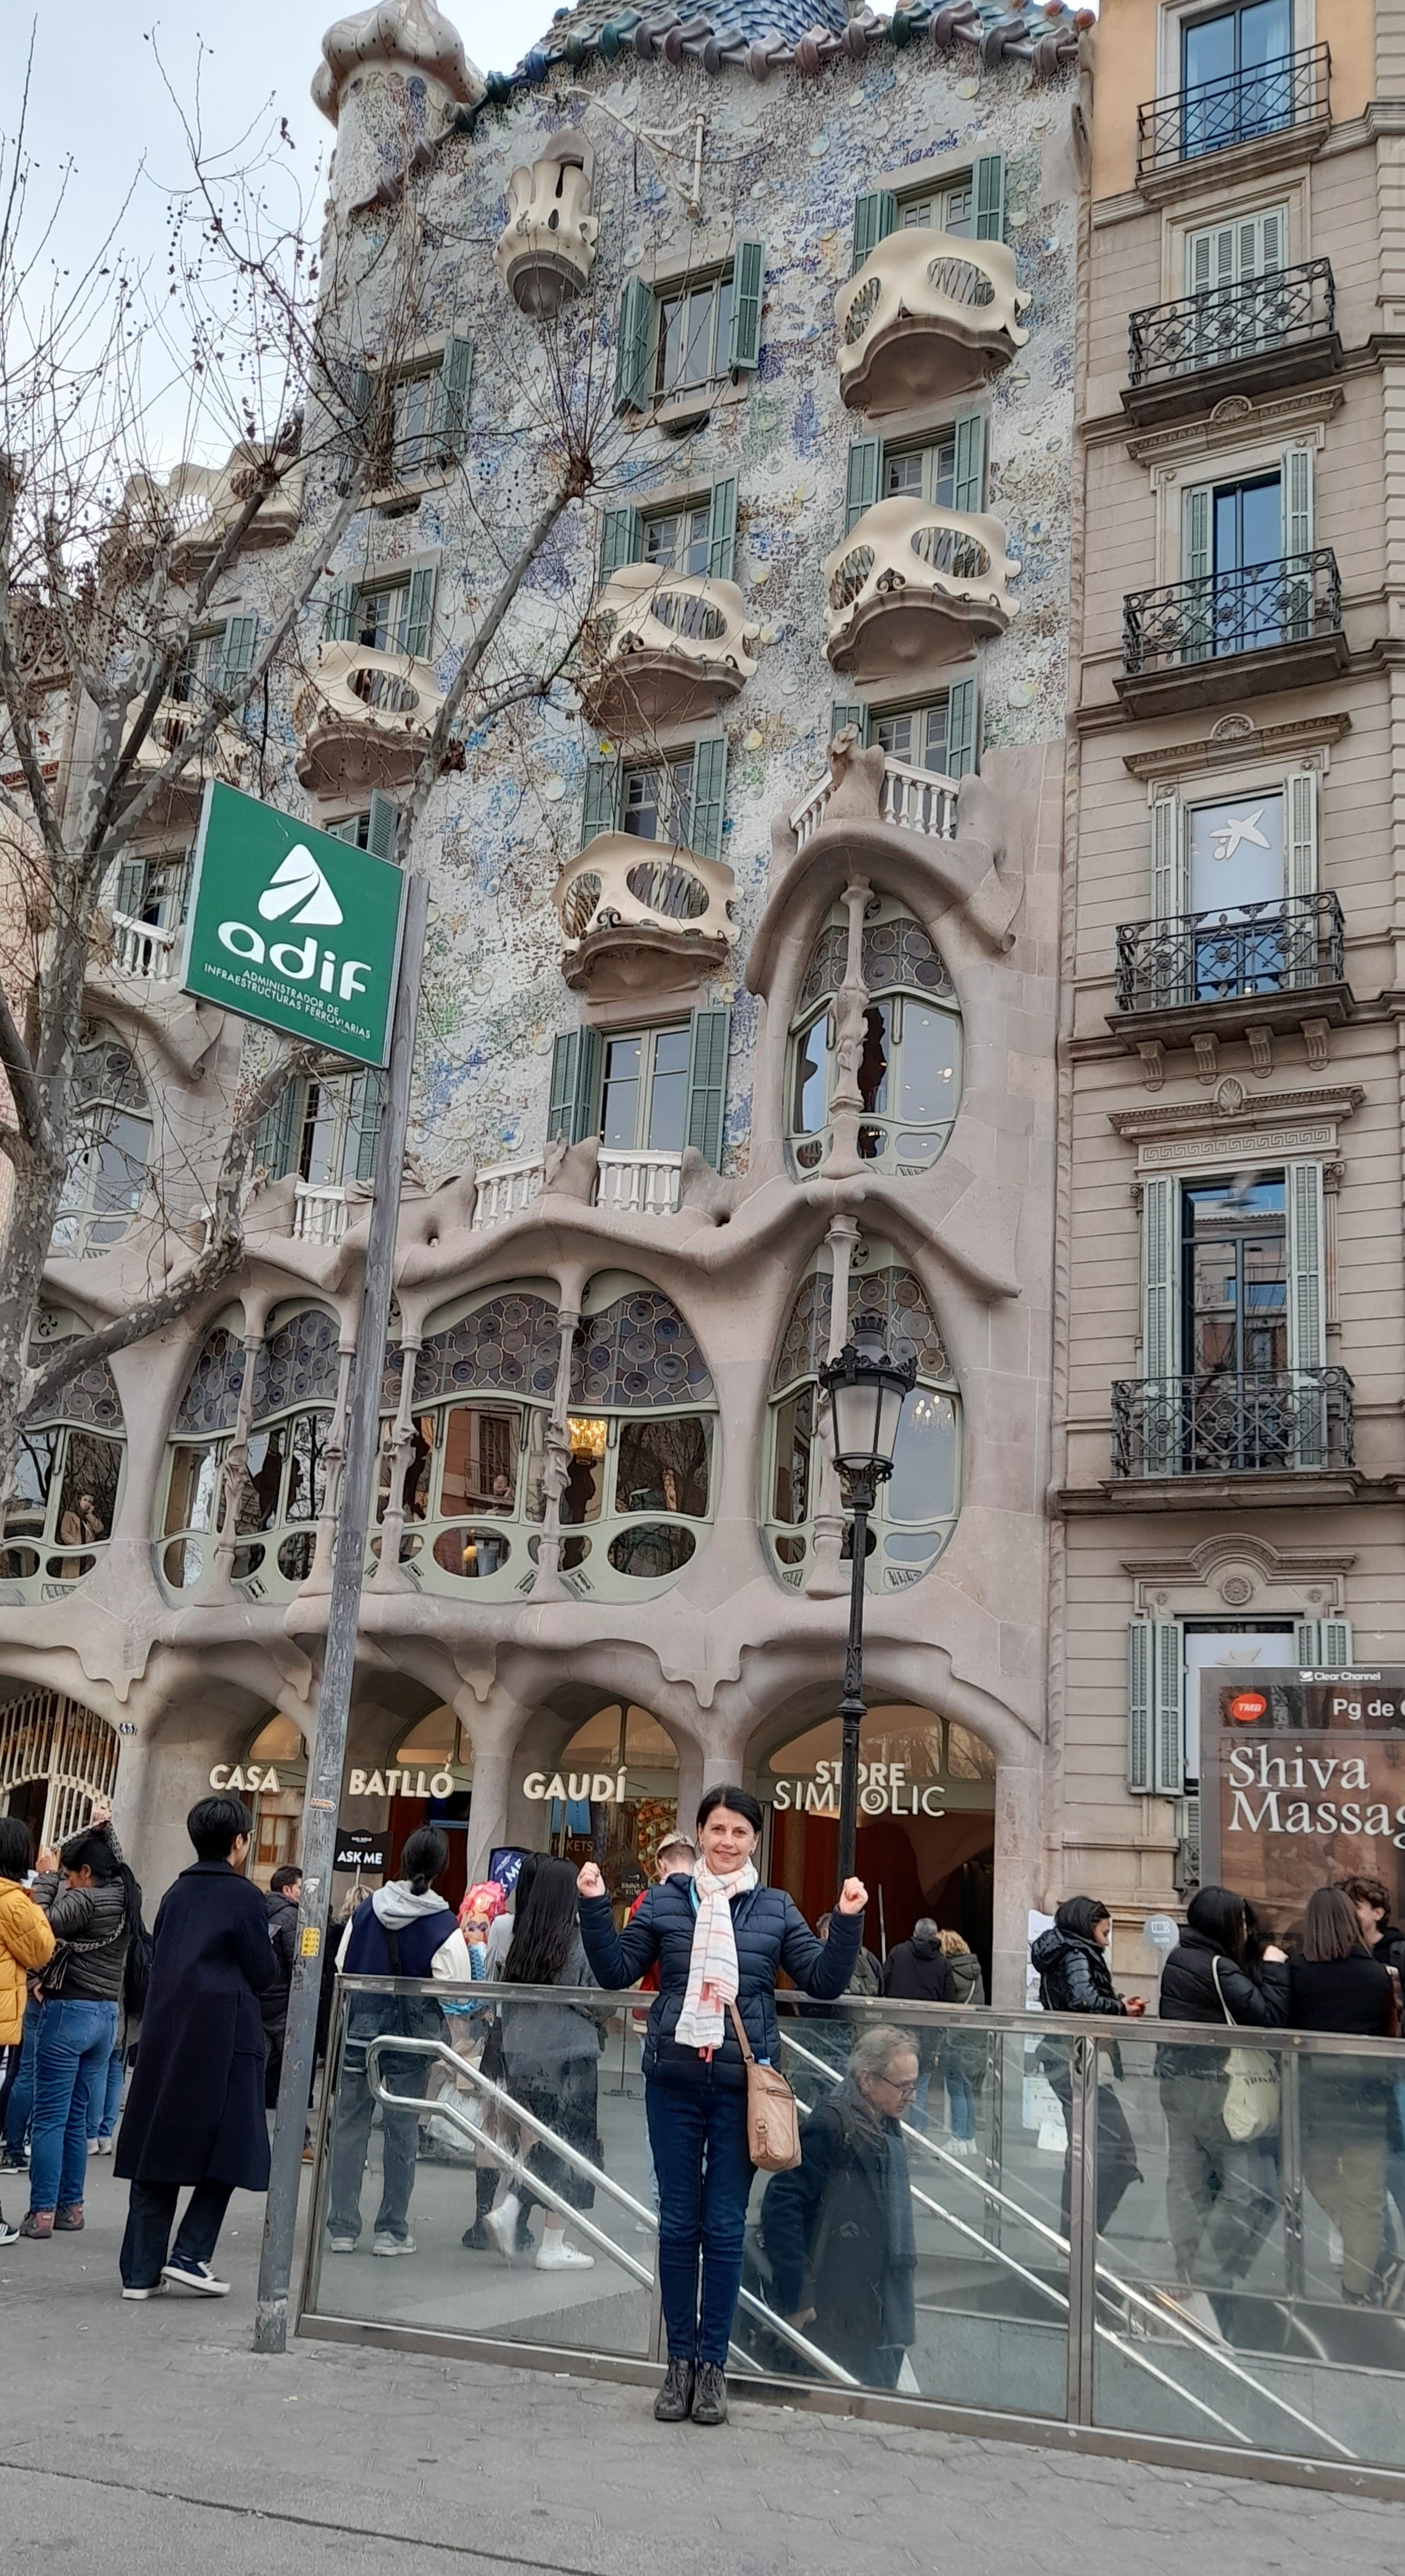 Obok Casa Battlo, innego wspaniałego budynku autorstwa Gaudiego